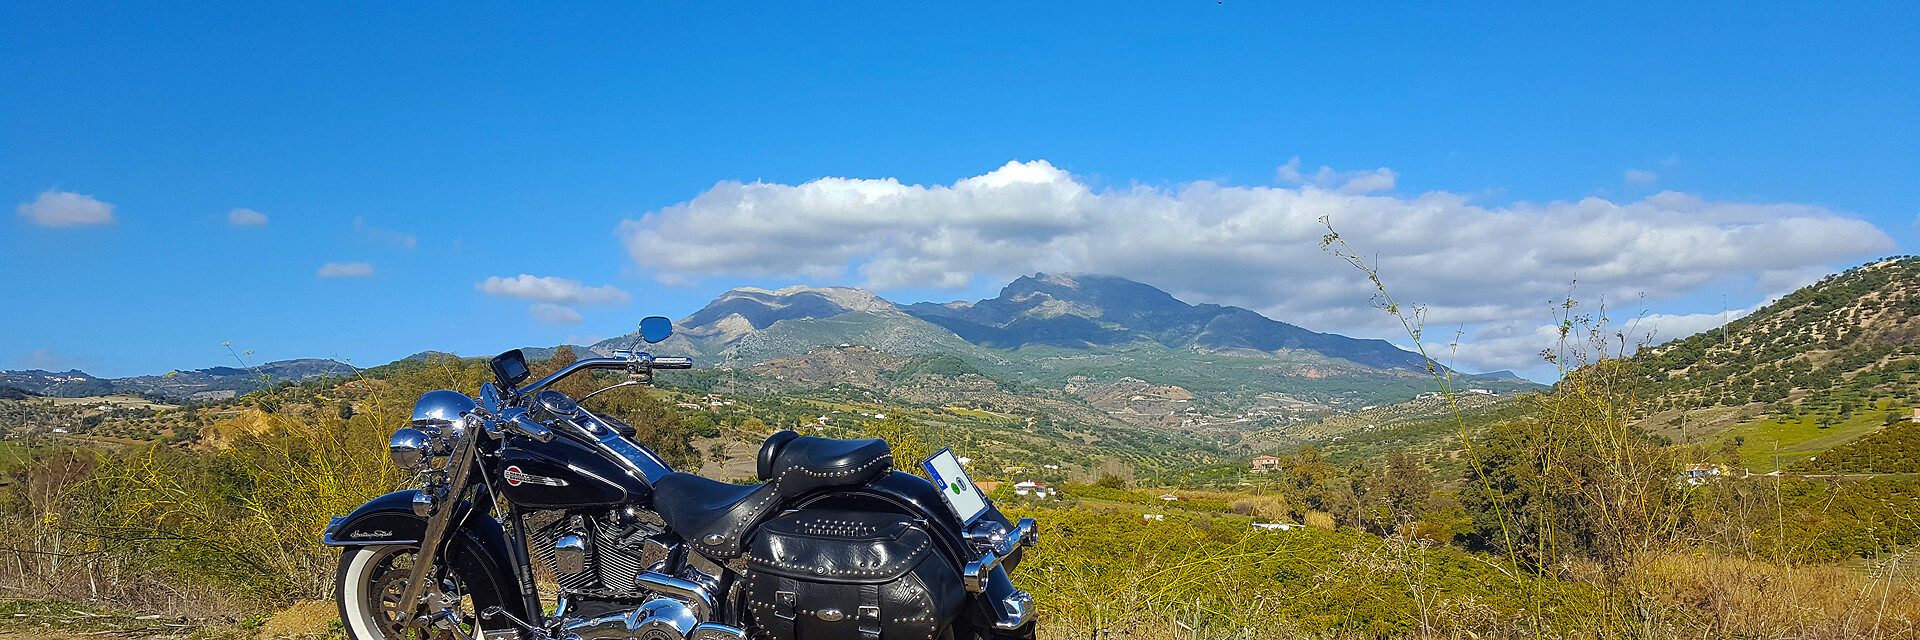 Impressionen von den Routen unserer Motorradtouren und Ausfahrten in Andalusien. Motorradreisen mit TourGuide in Spanien.